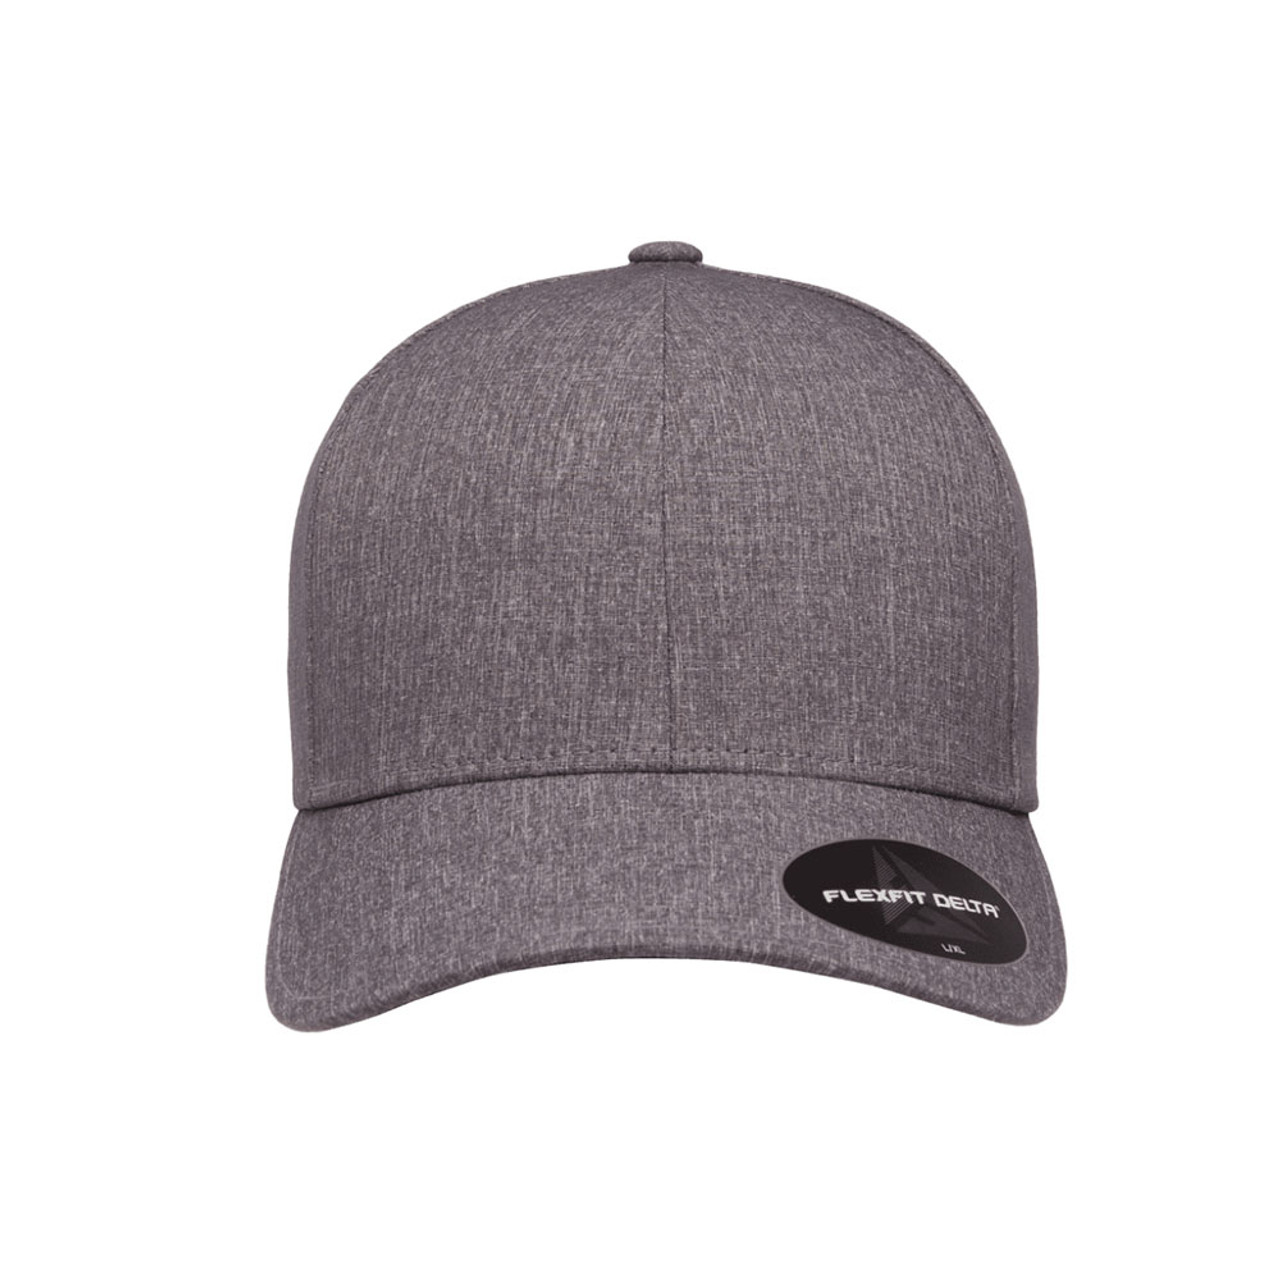 One Cap Hat | Carbon Flexfit Dozen Delta - Jac The